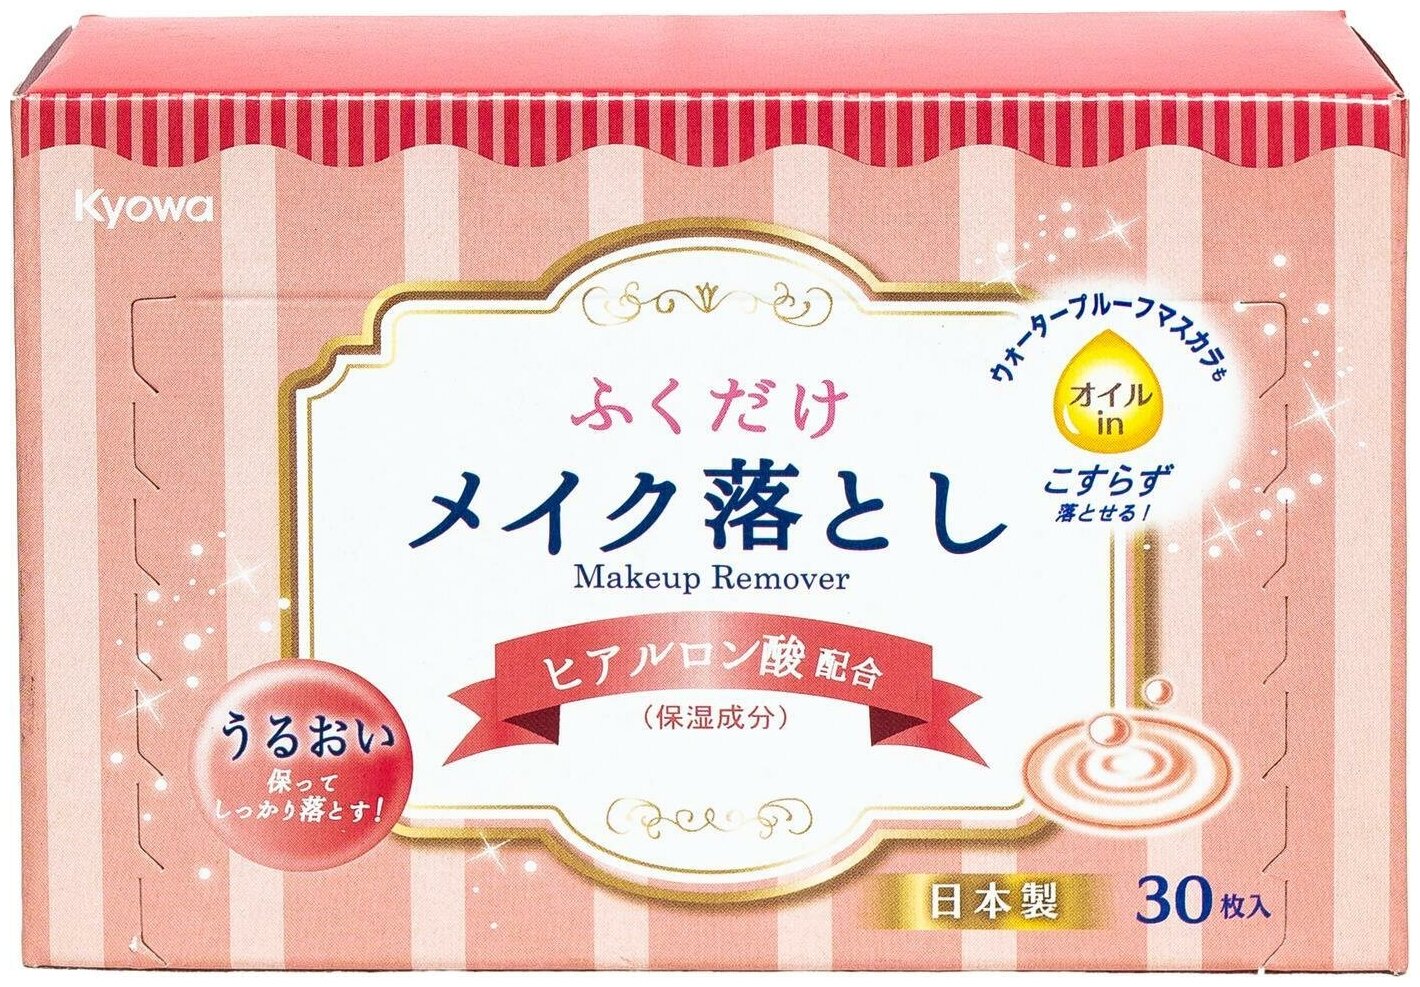 Kyowa Салфетки влажные для снятия макияжа с гиалуроновой кислотой (30 штук), Япония